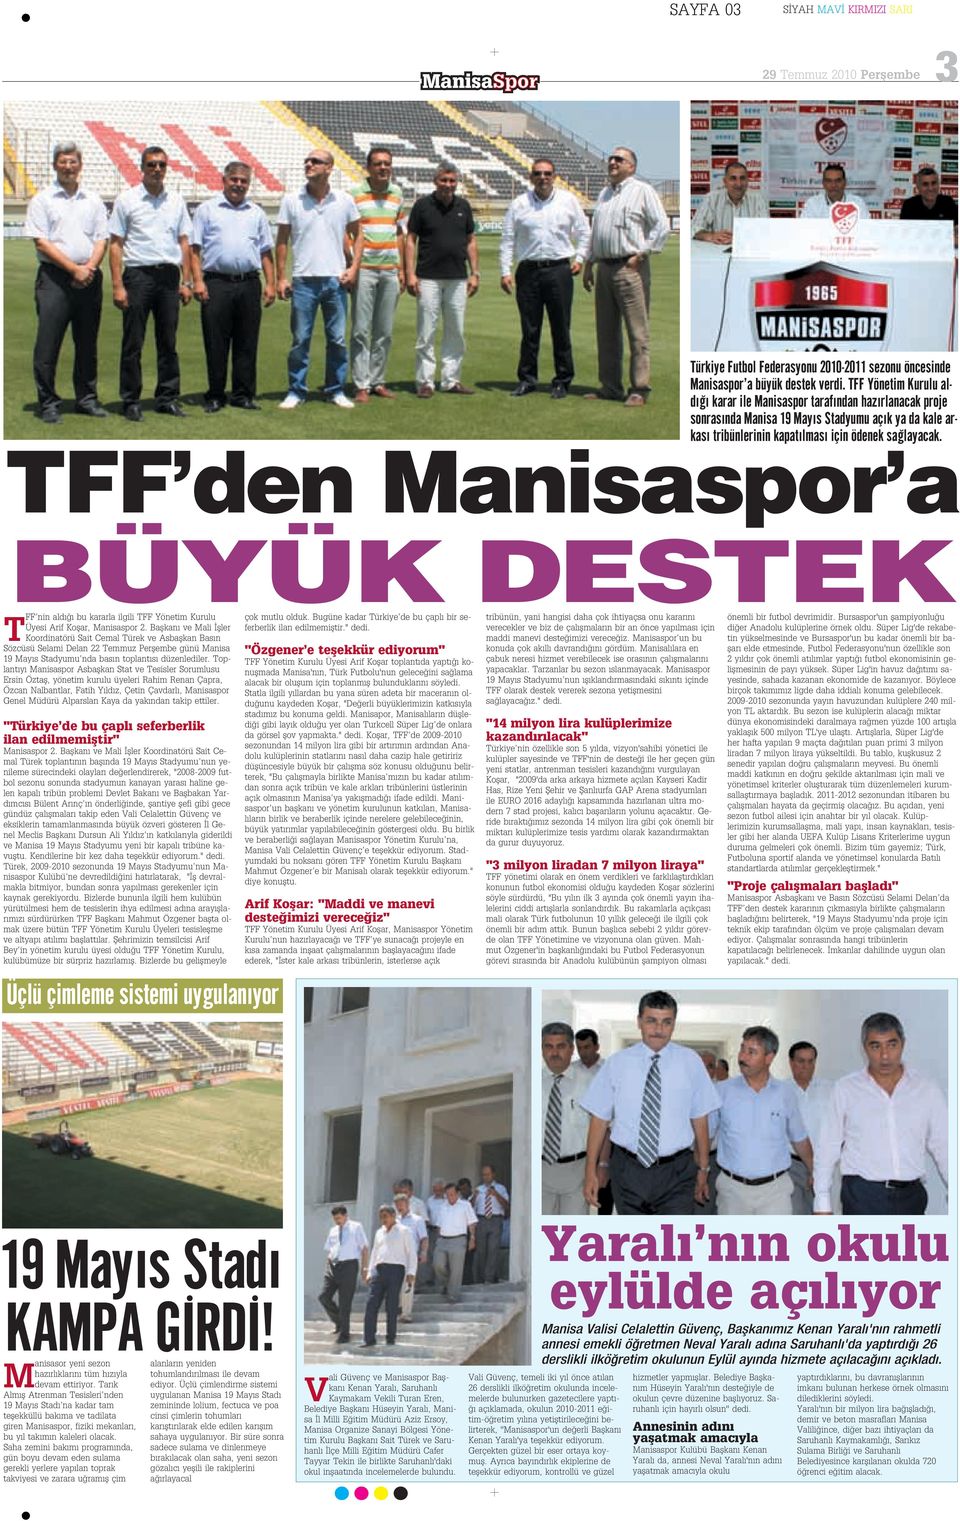 TFF den Manisaspor a BÜYÜK DESTEK T FF nin ald bu kararla ilgili TFF Yönetim Kurulu Üyesi Arif Koflar, Manisaspor 2.